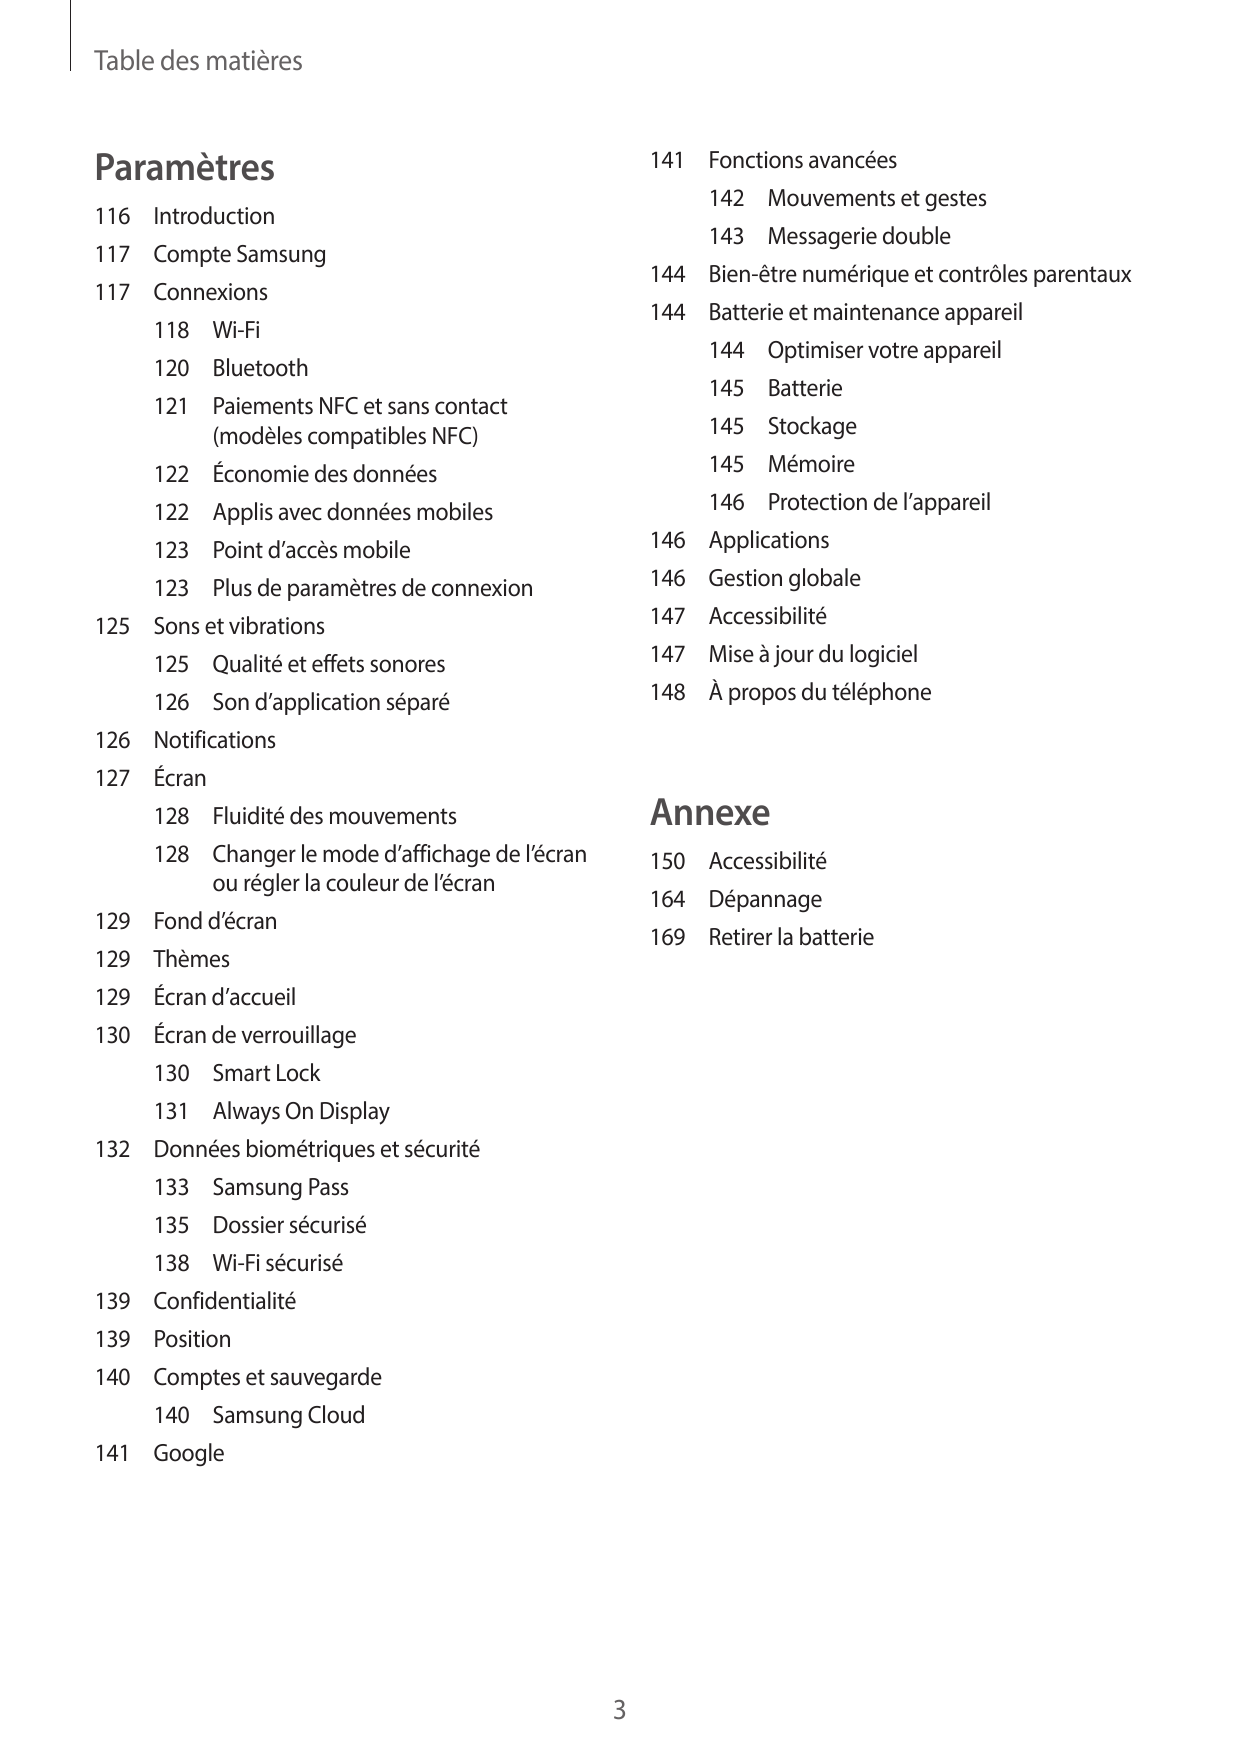 Table des matièresParamètres141 Fonctions avancées142 Mouvements et gestes116Introduction143 Messagerie double117 Compte Samsung